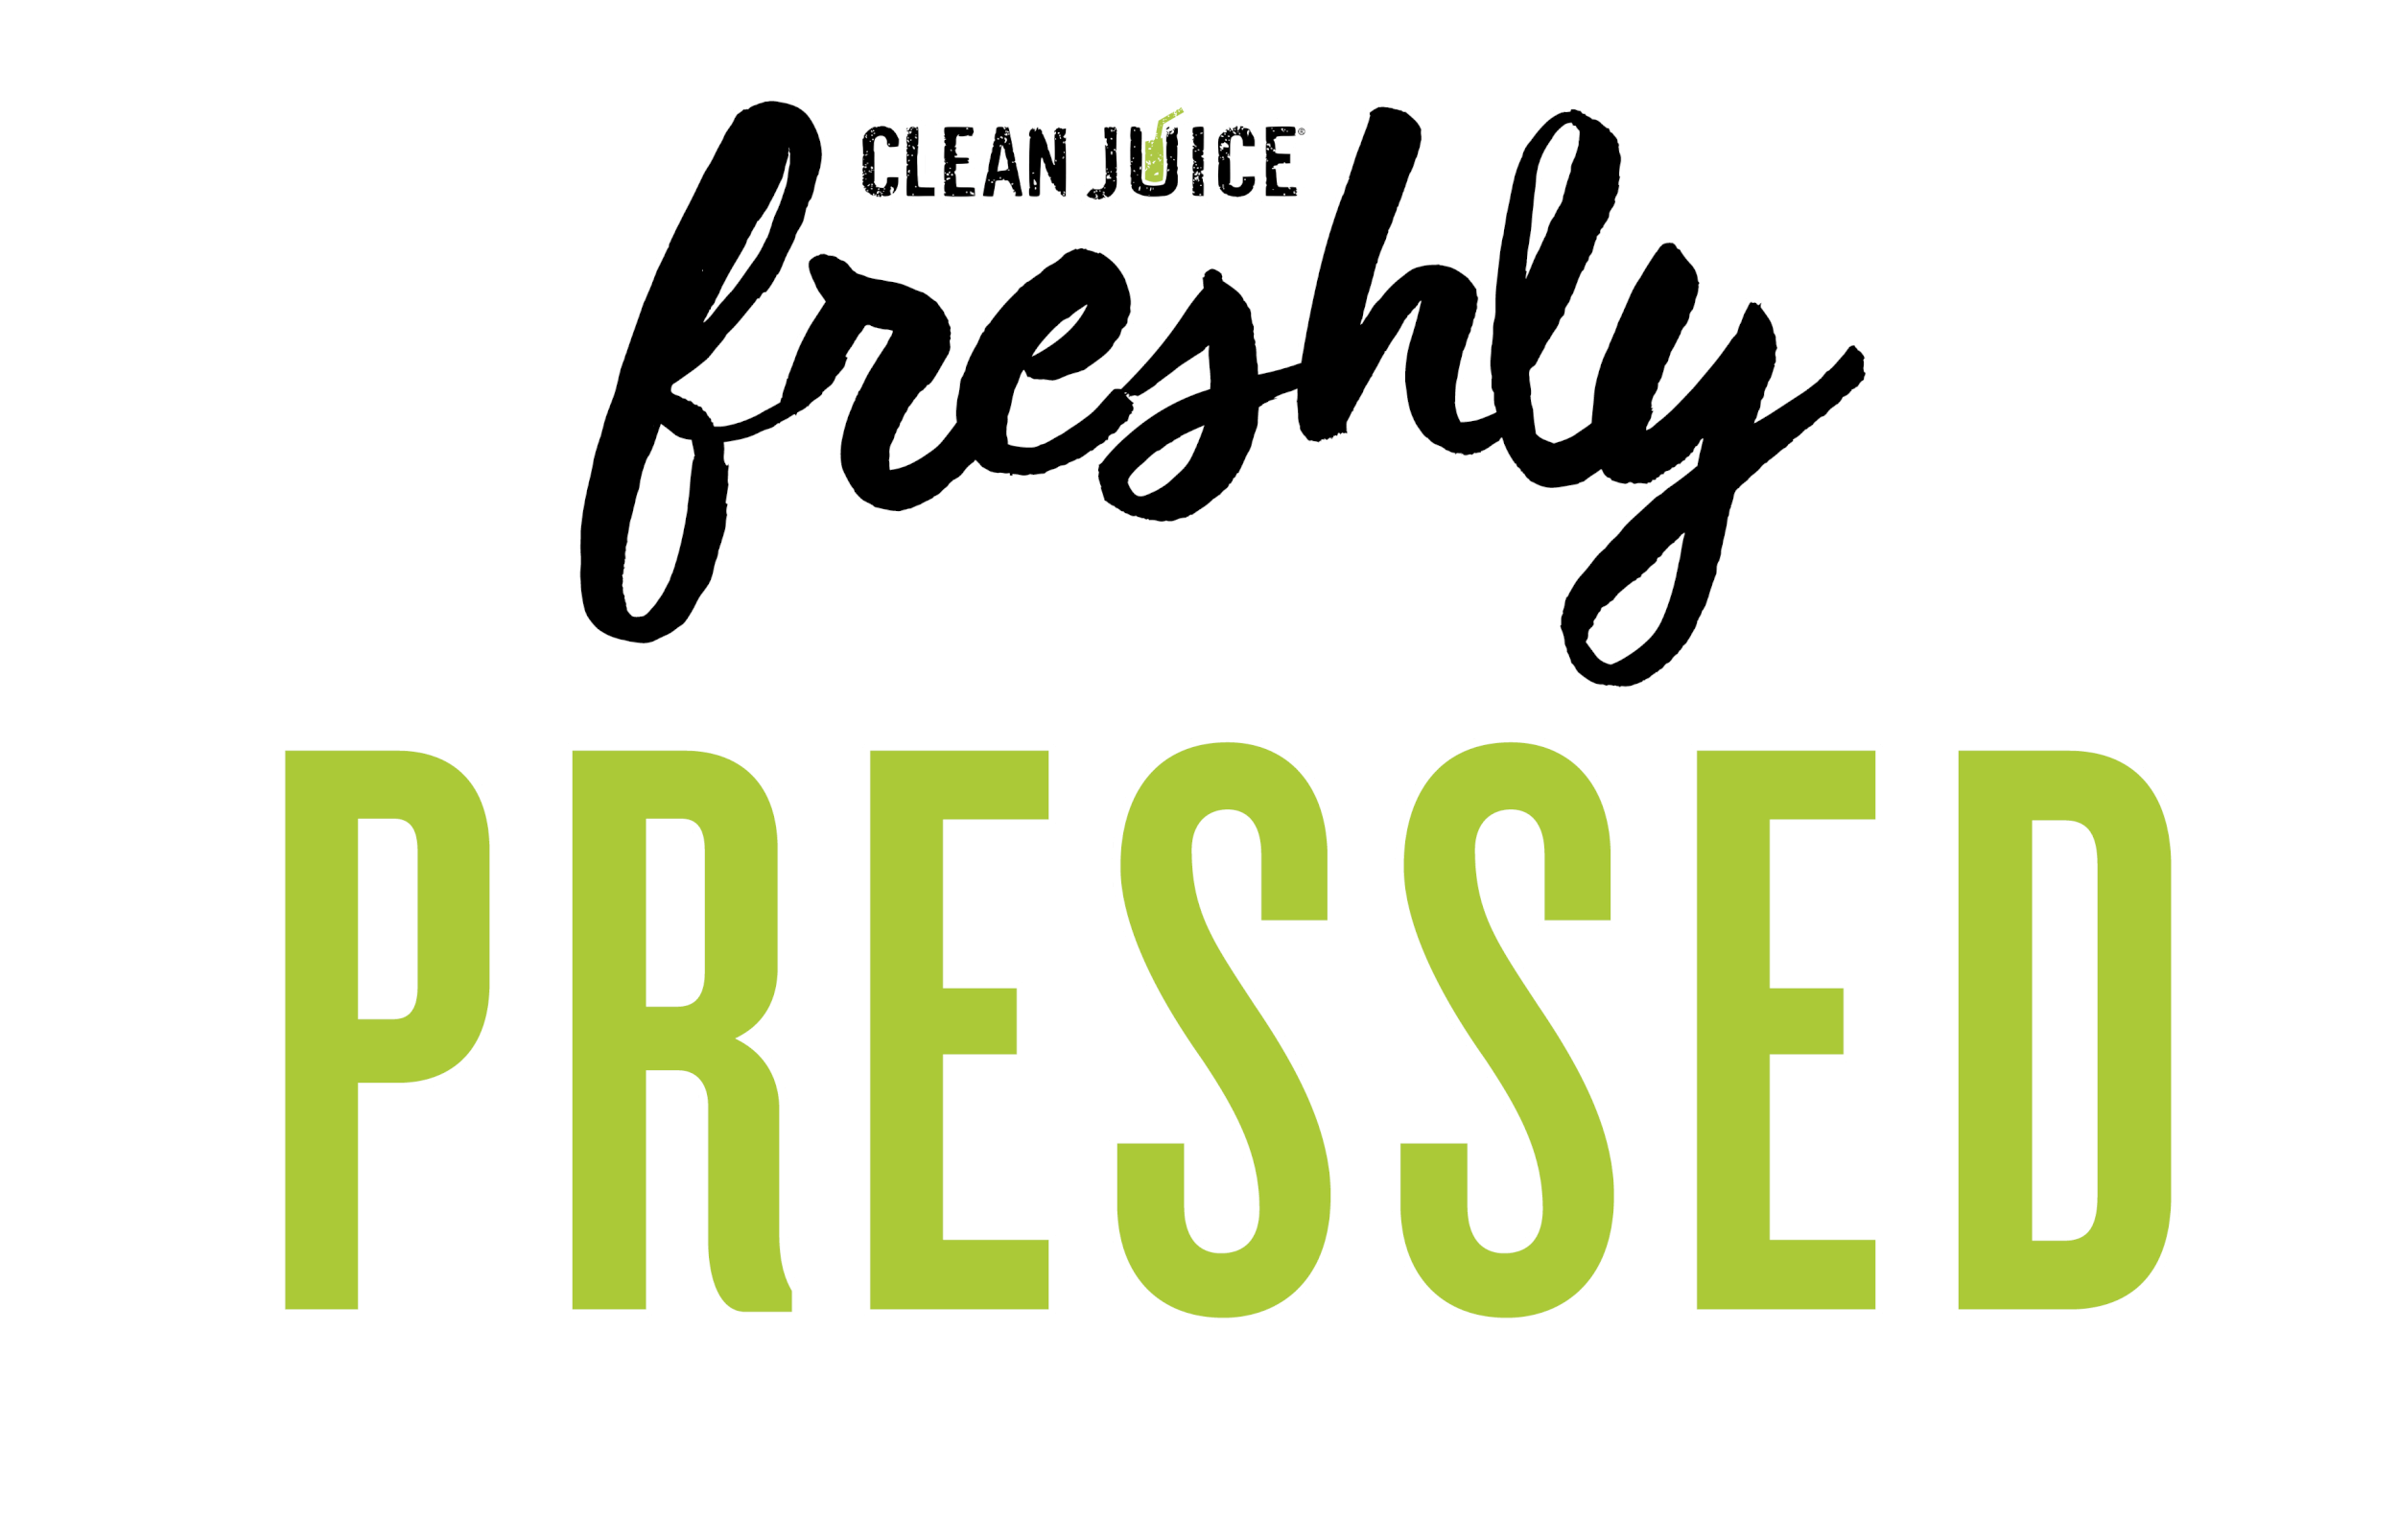 Freshley-pressed1.gif